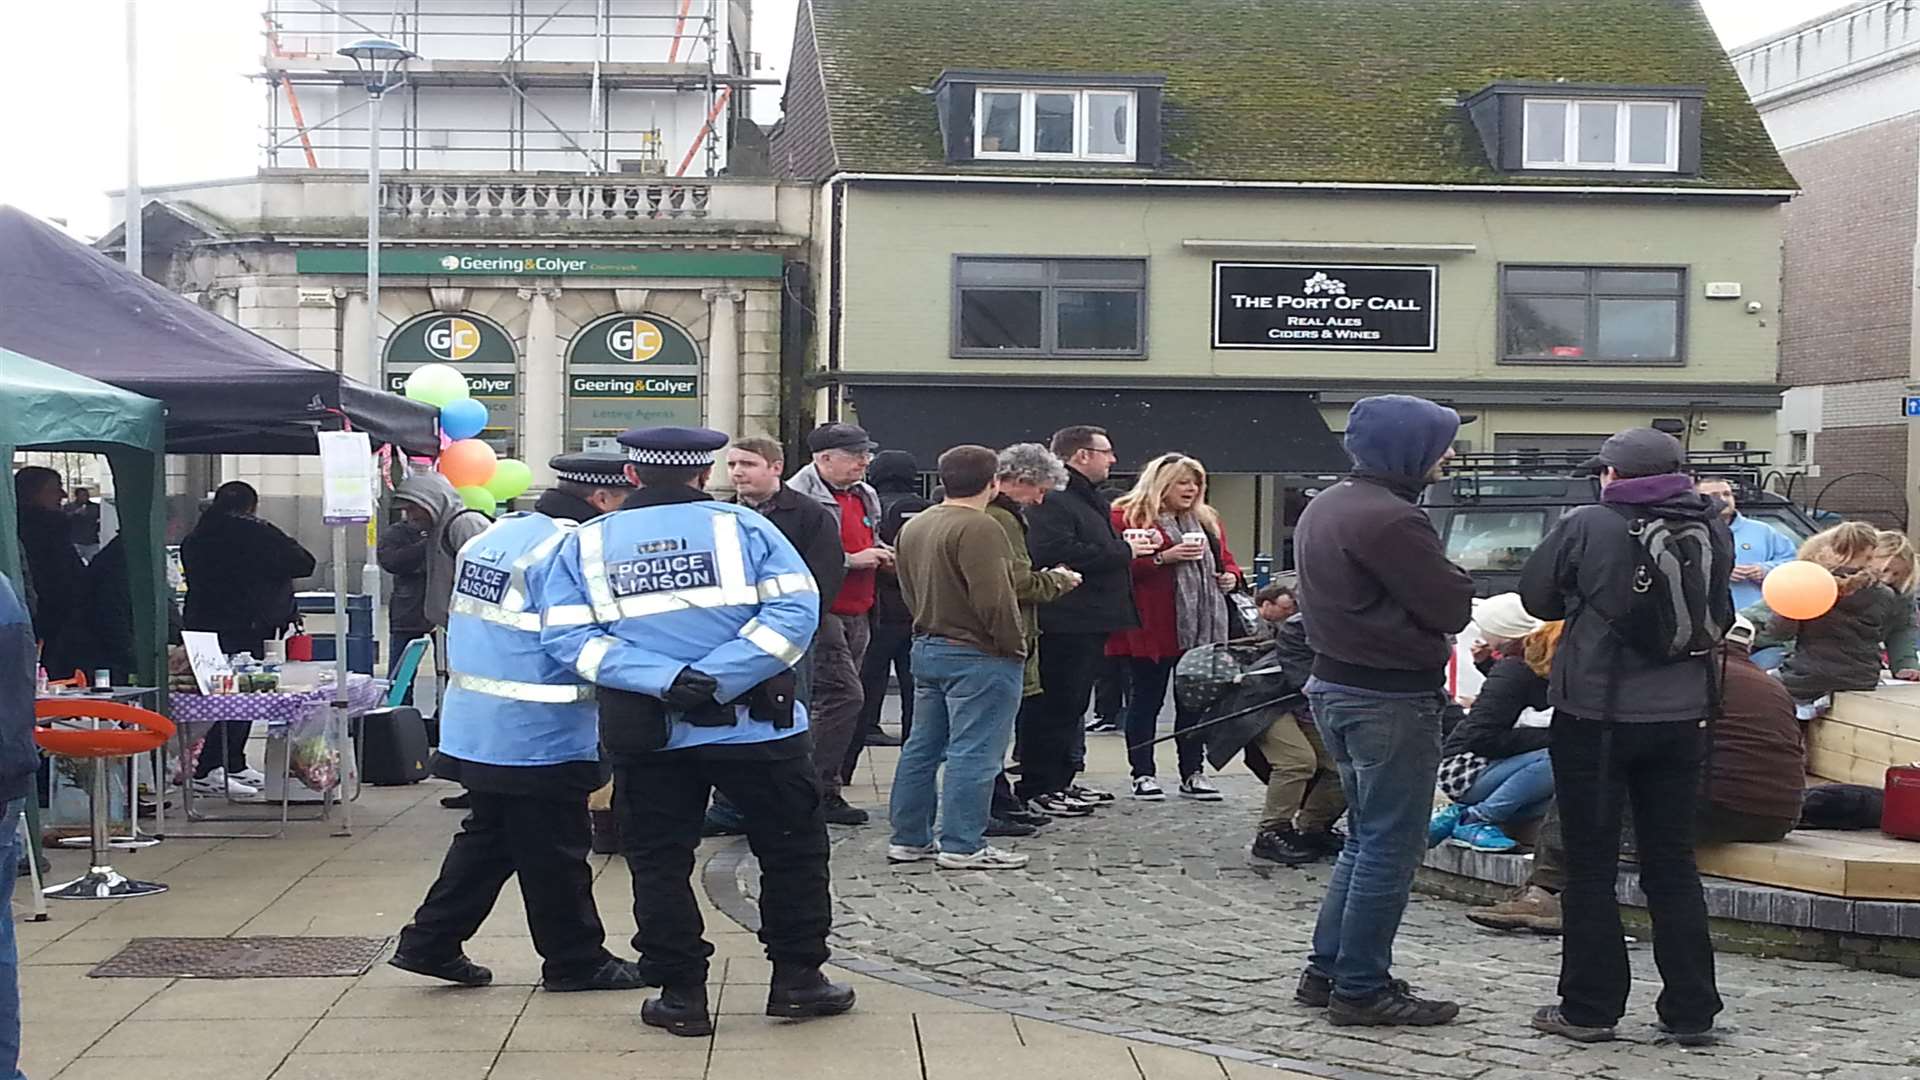 Police presence in Market Square